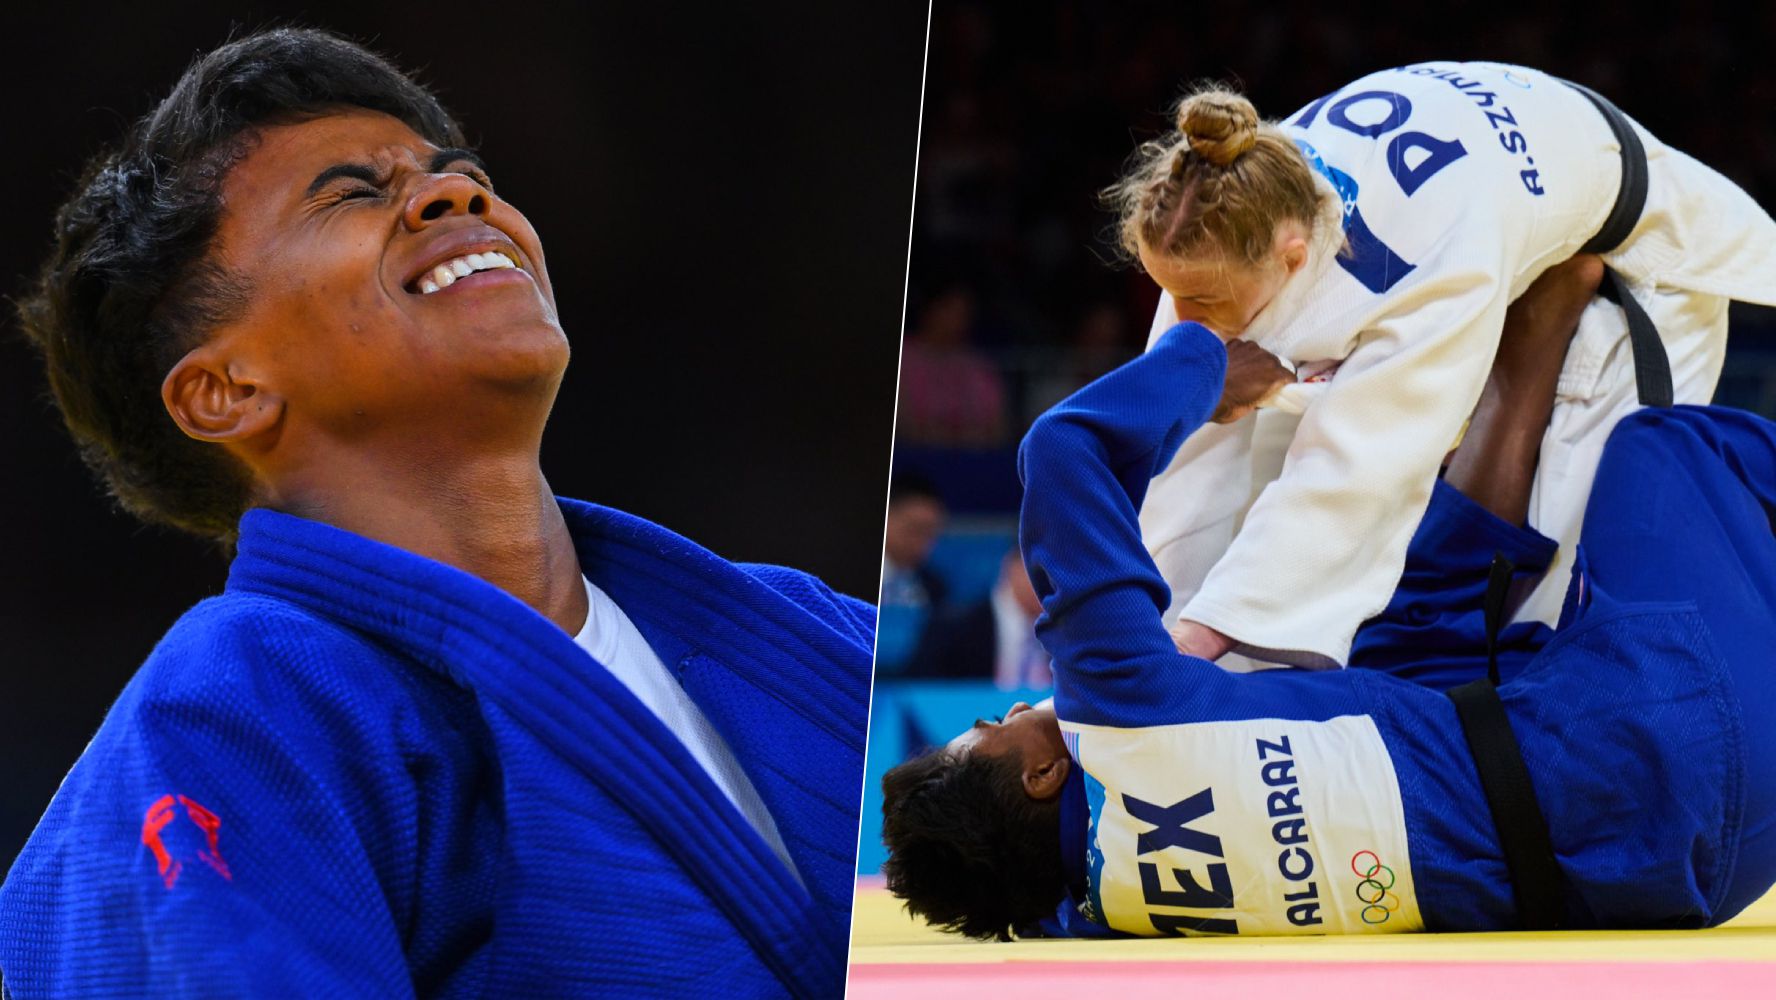 ¡Prisca Awiti va a semifinales! ¿Dónde ver la competencia de la judoka mexicana?